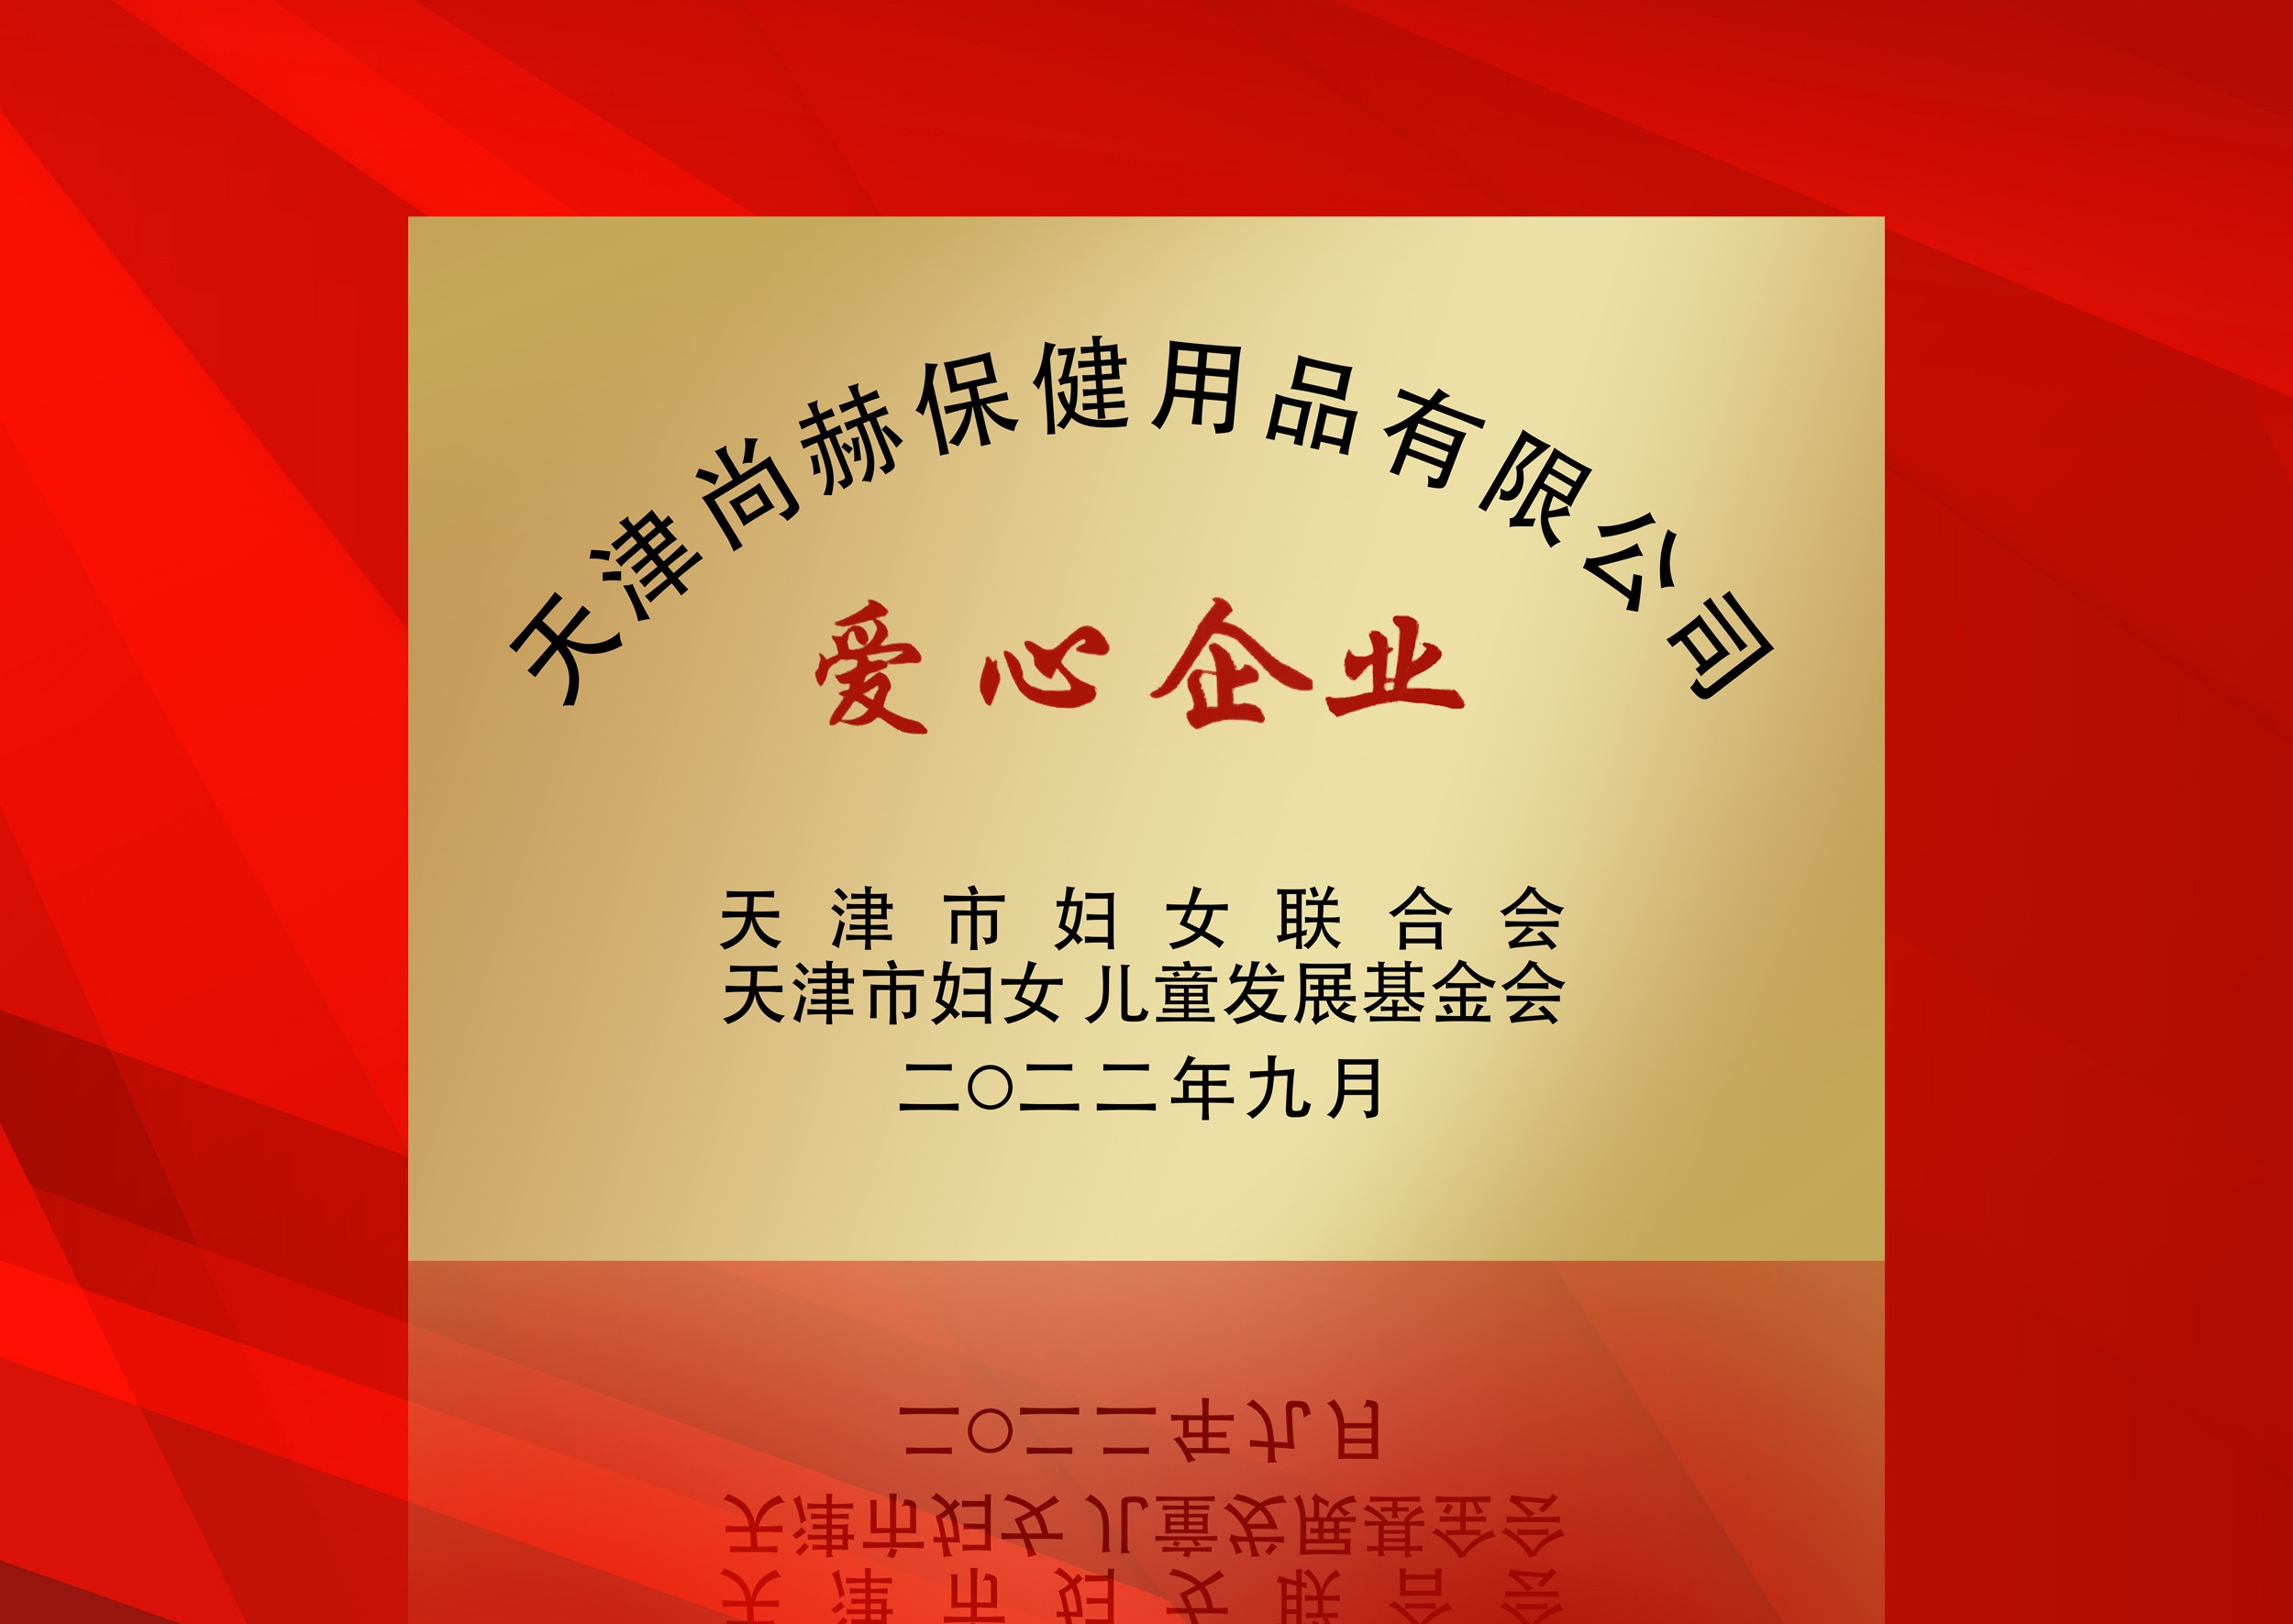 2022年9月-立博登录（中国）有限公司官网公司荣获-天津市妇女联合会-“爱心企业”称号